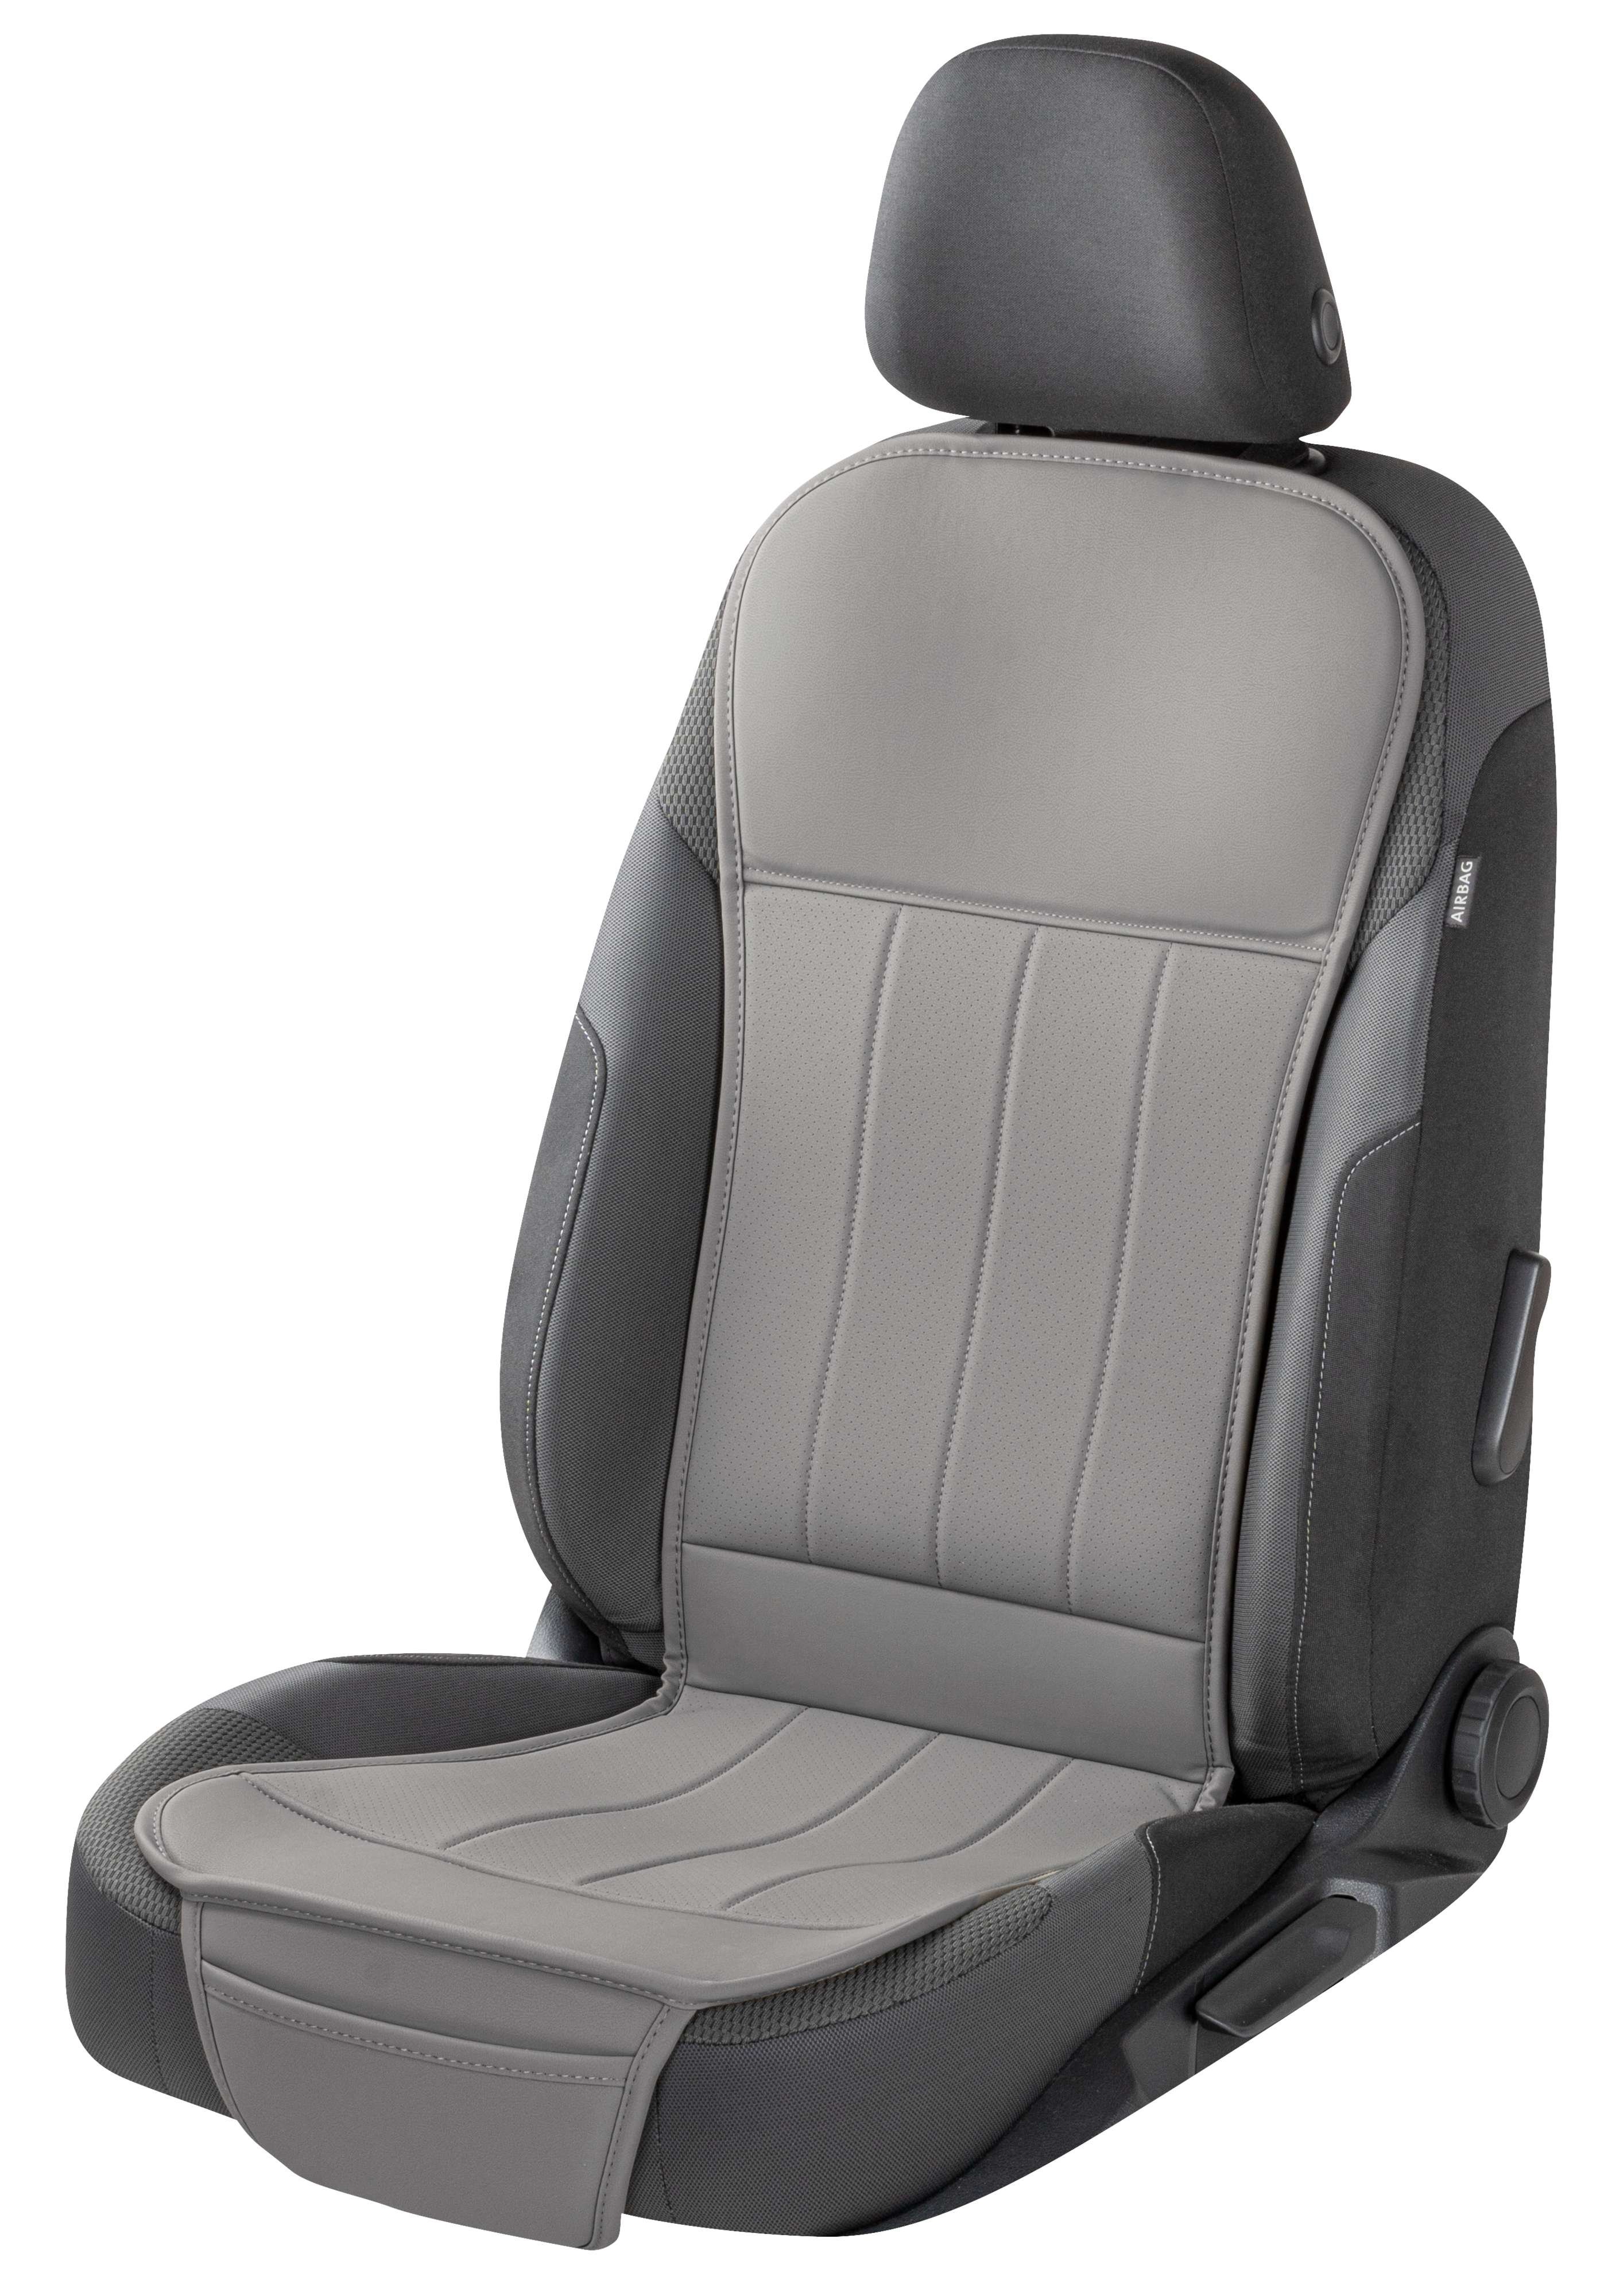 Autostoelhoes Lewis, universele stoelhoes en beschermmat in grijs, stoelbeschermer voor auto's en vrachtwagens